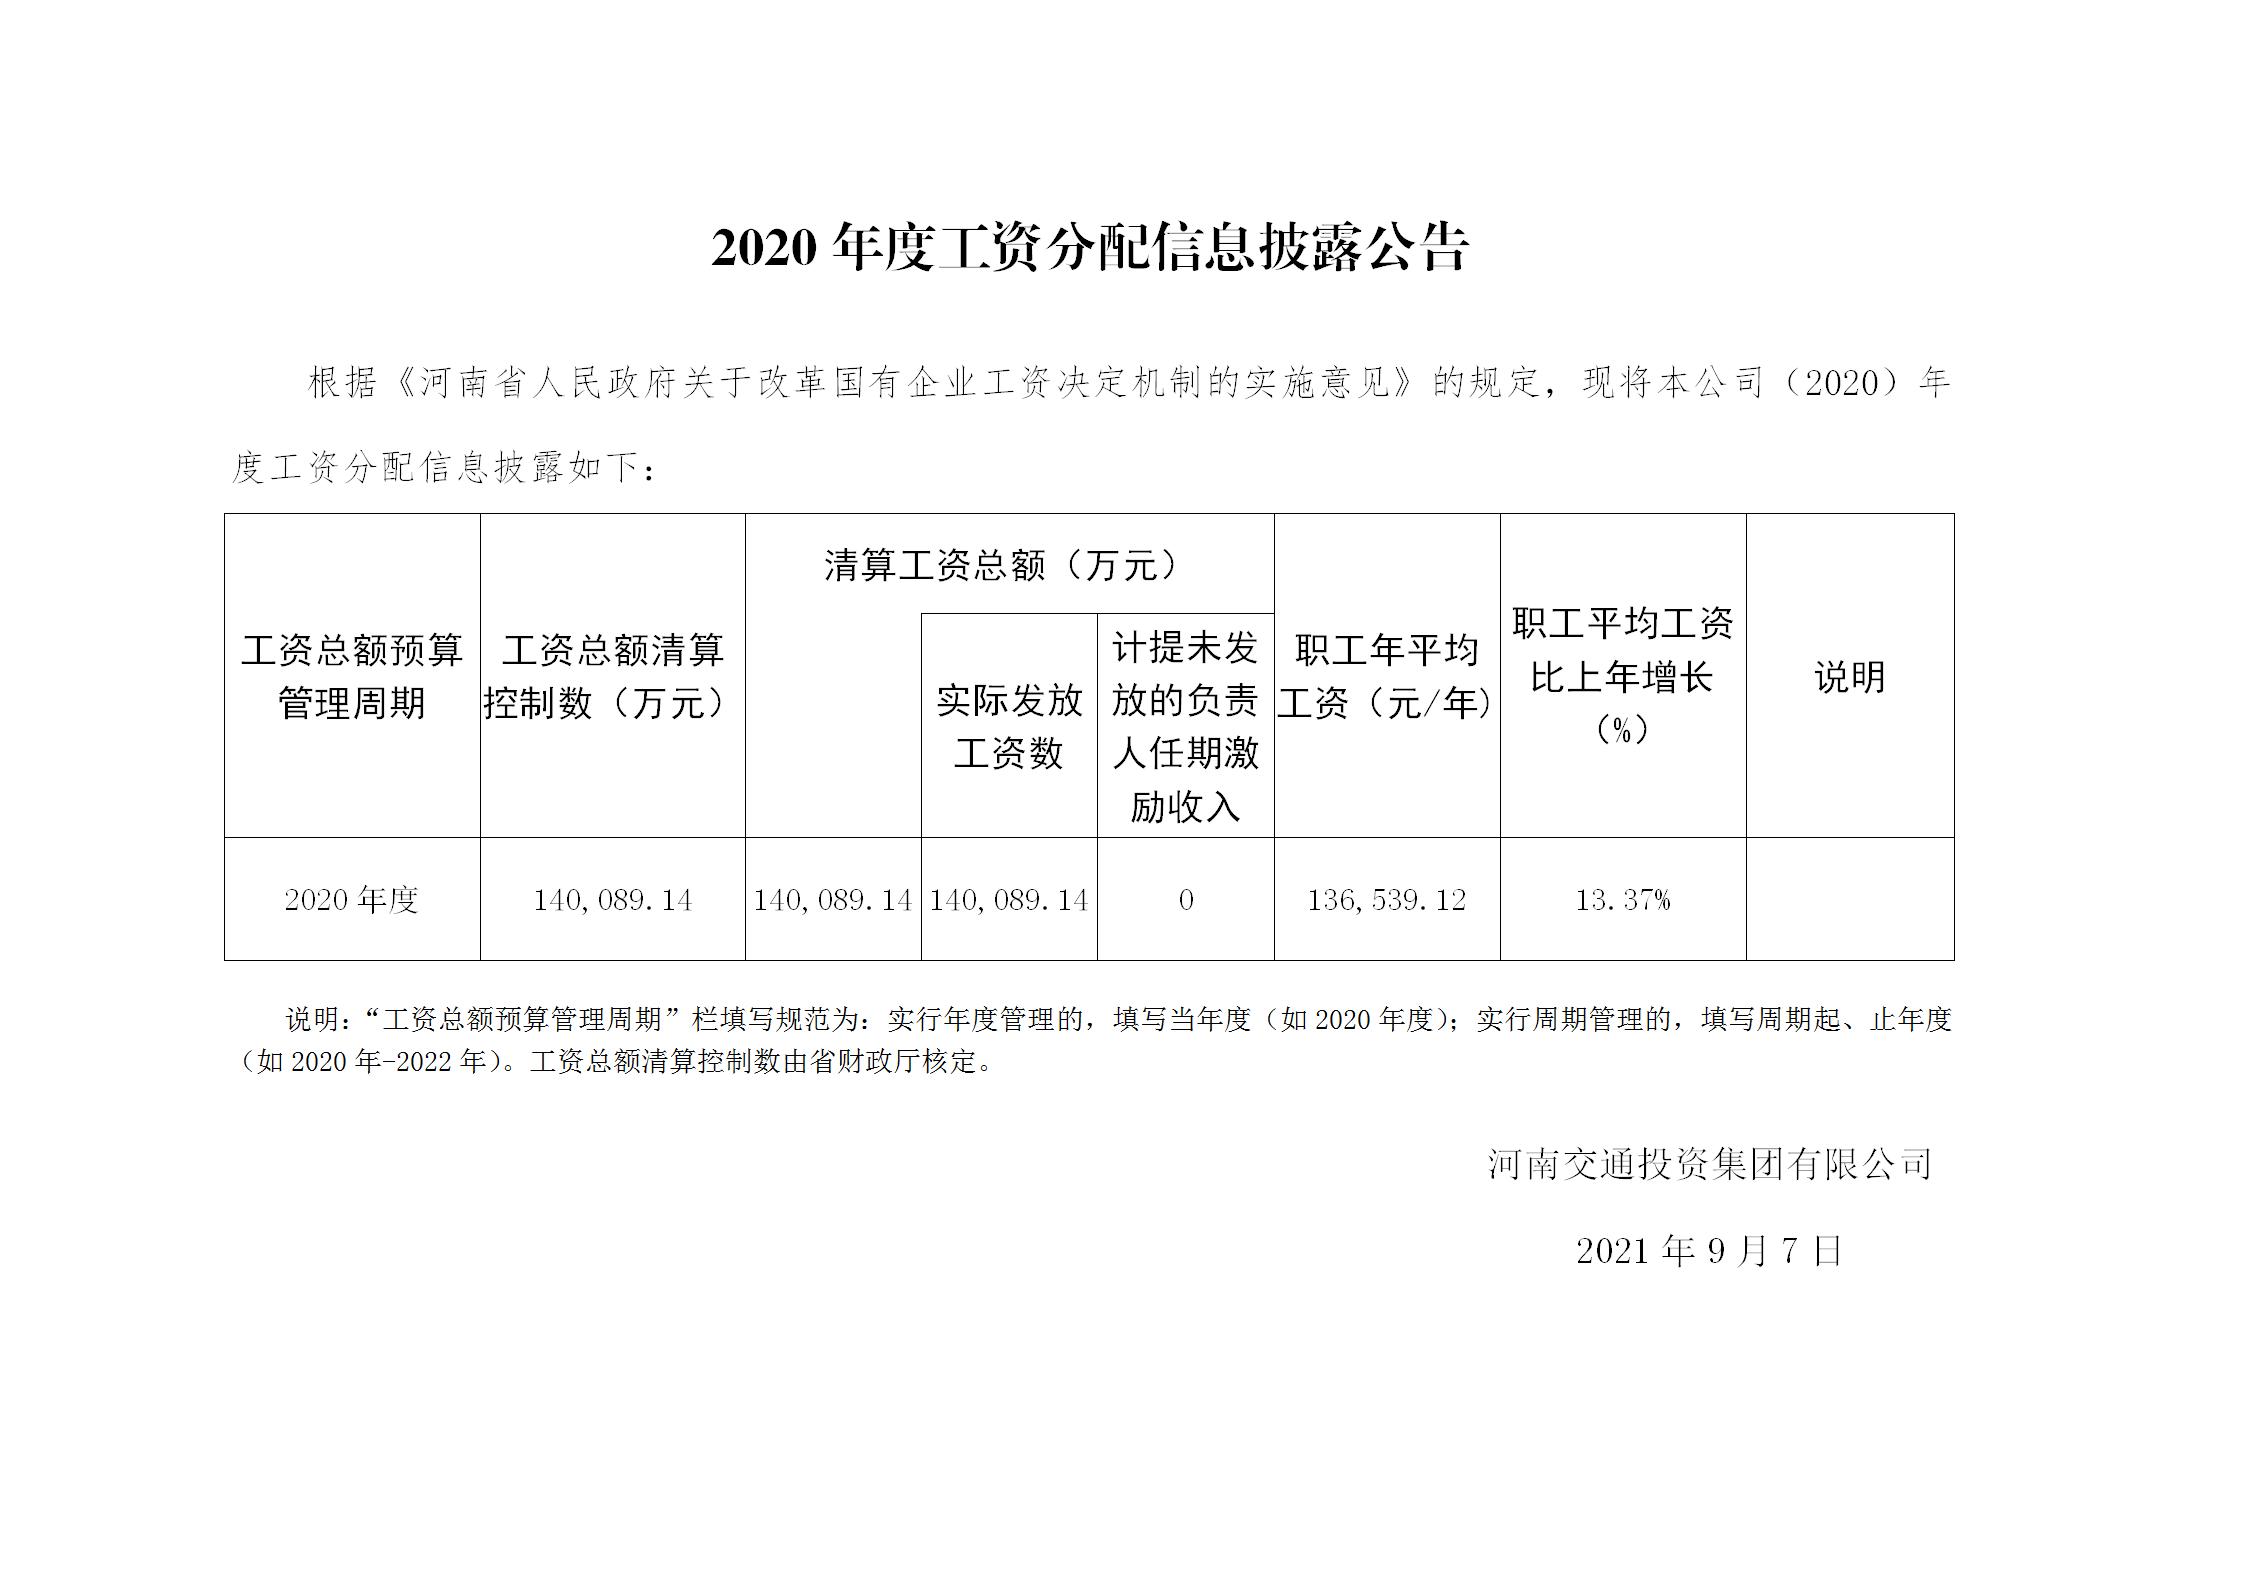 河南交通投资集团有限公司关于2020年度工资总额预算执行情况及清算结果的报告-0907披露_01.jpg